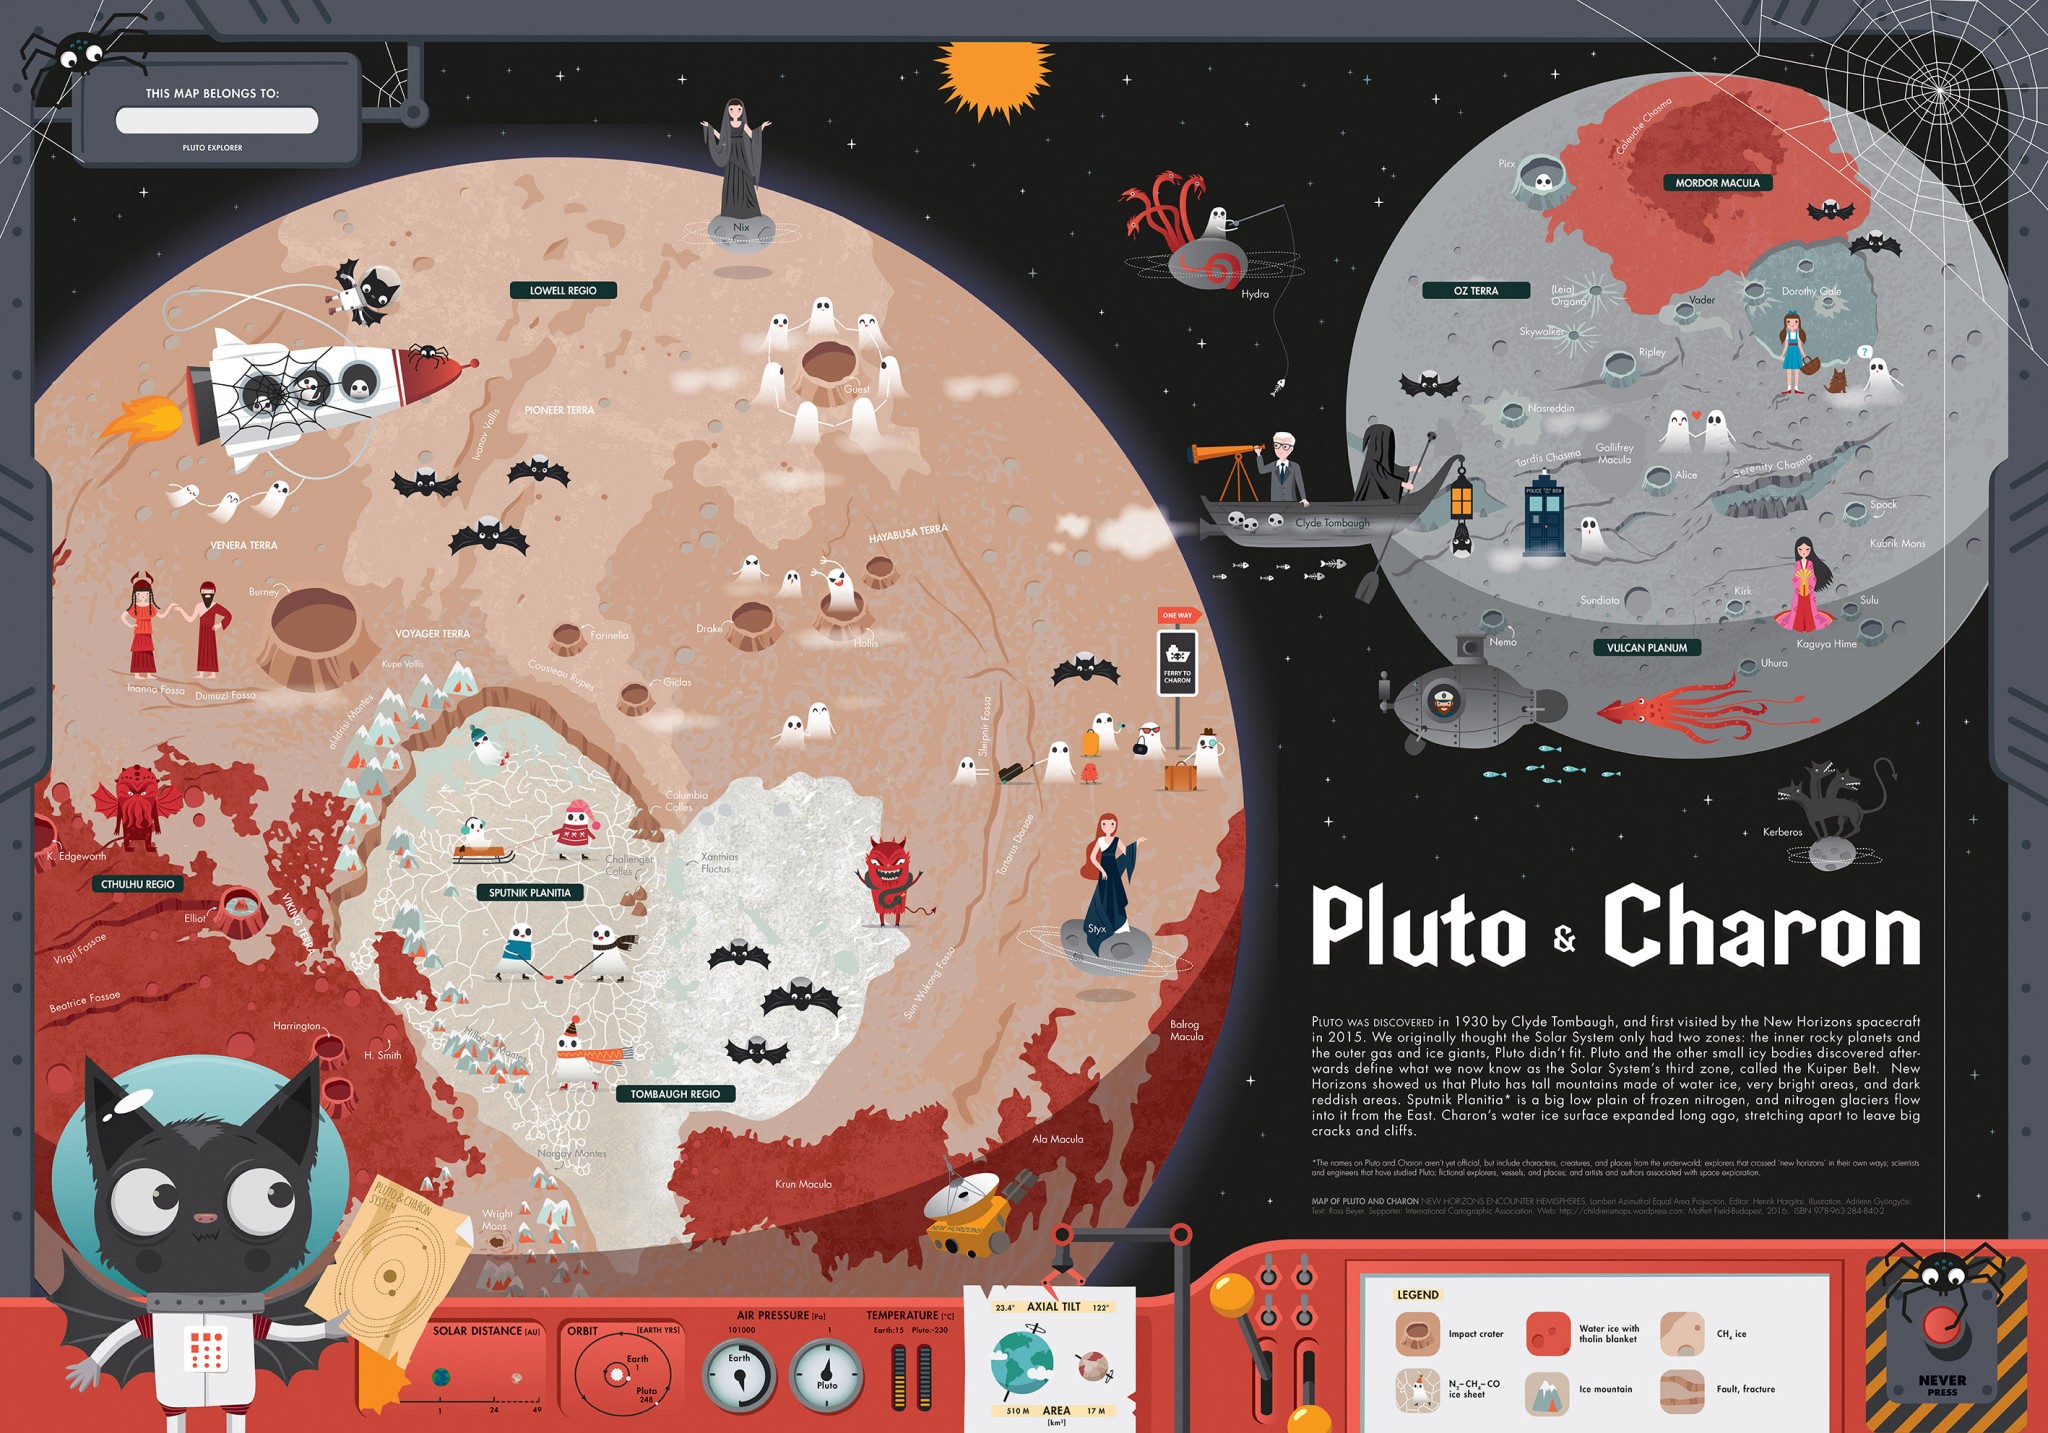 Pluton & Charon